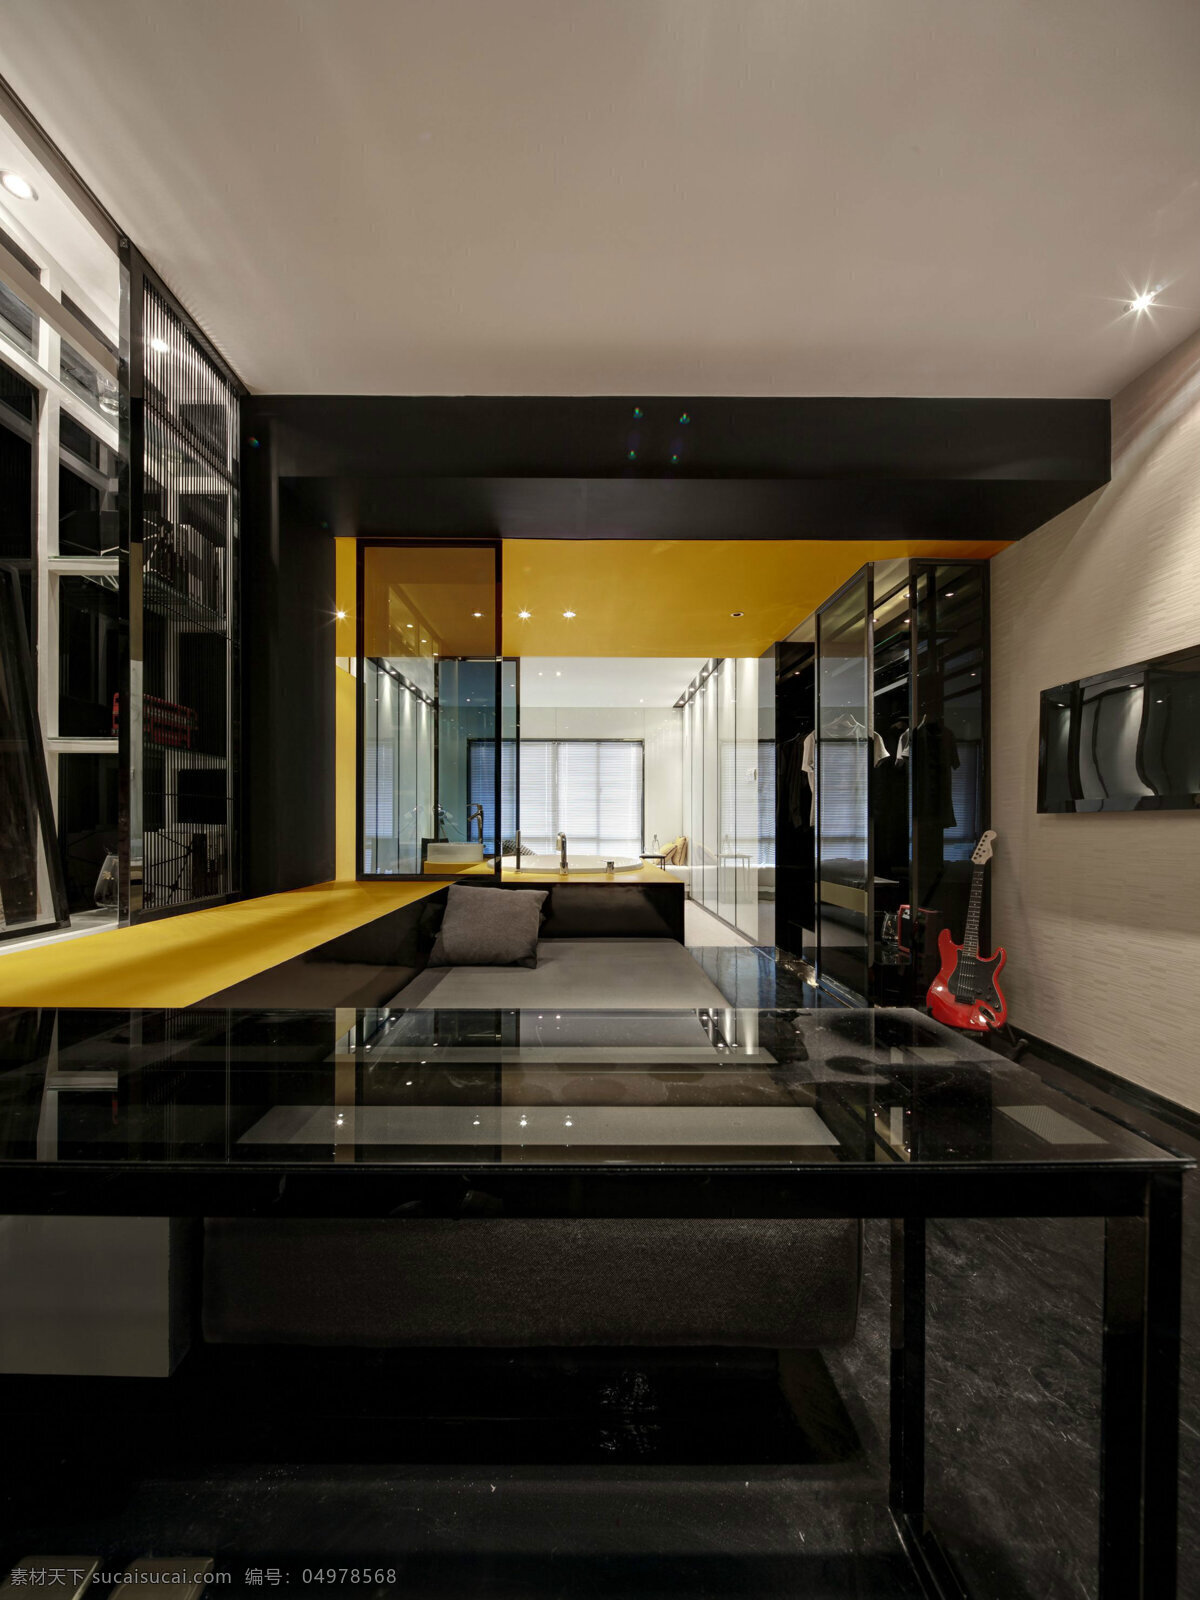 黑色 简约 家居 现代 效果图 客厅 软装效果图 室内设计 展示效果 房间设计家装 家具